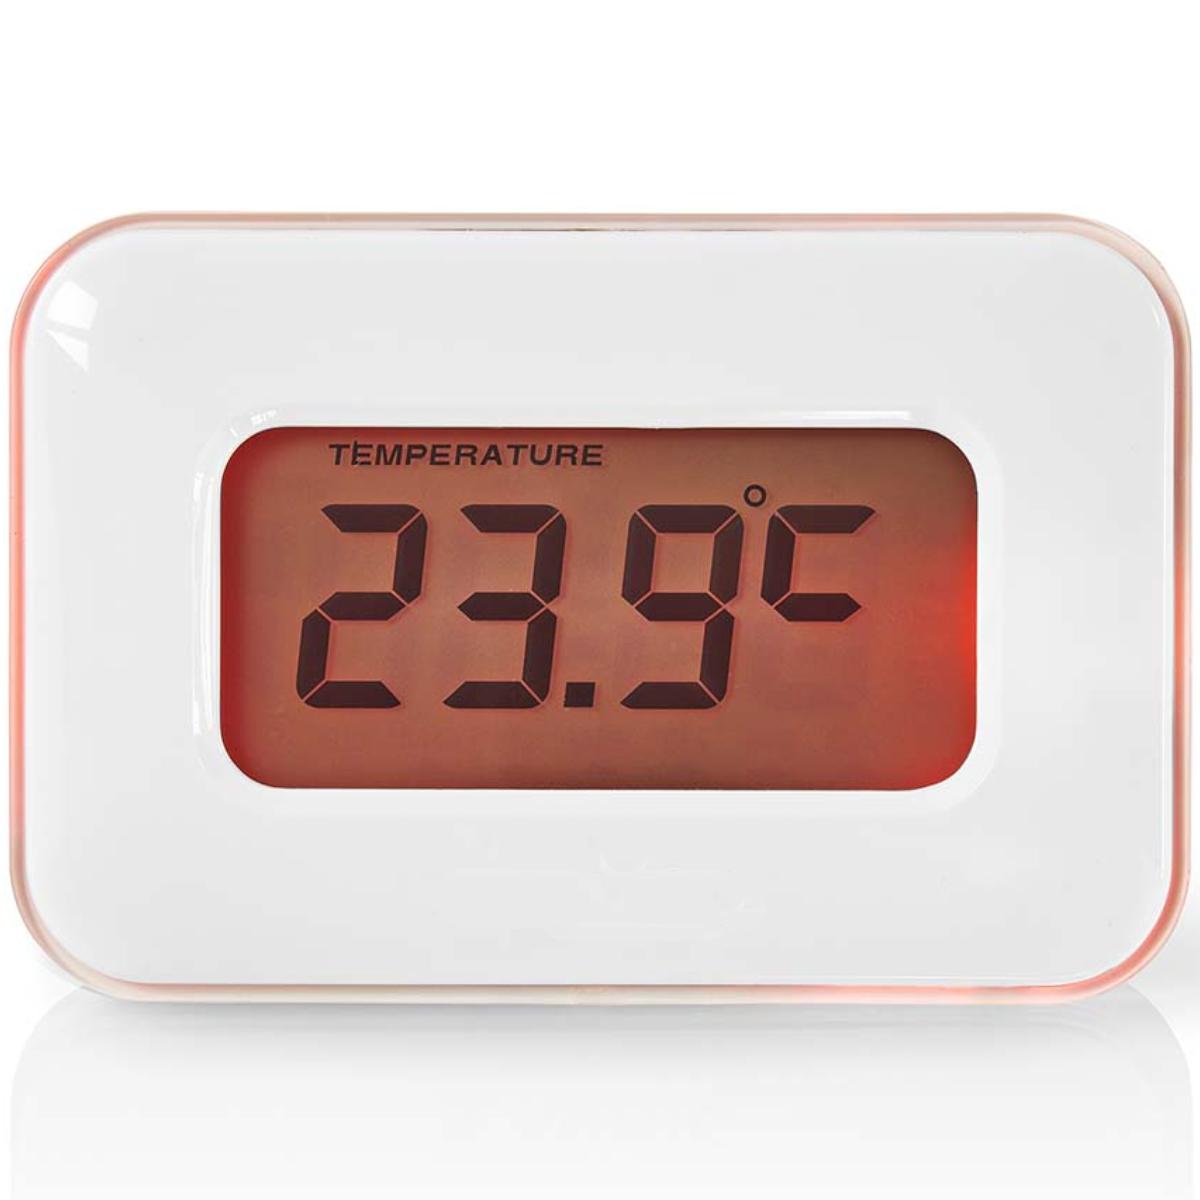 Digitale Alarmklok | Datum/Temperatuur | Kleurendisplay - Multifunctionele alarmklok die tijd, datum en weergeeft en voorzien is van een alarm timer. Iedere functie licht op een andere kleur, wat